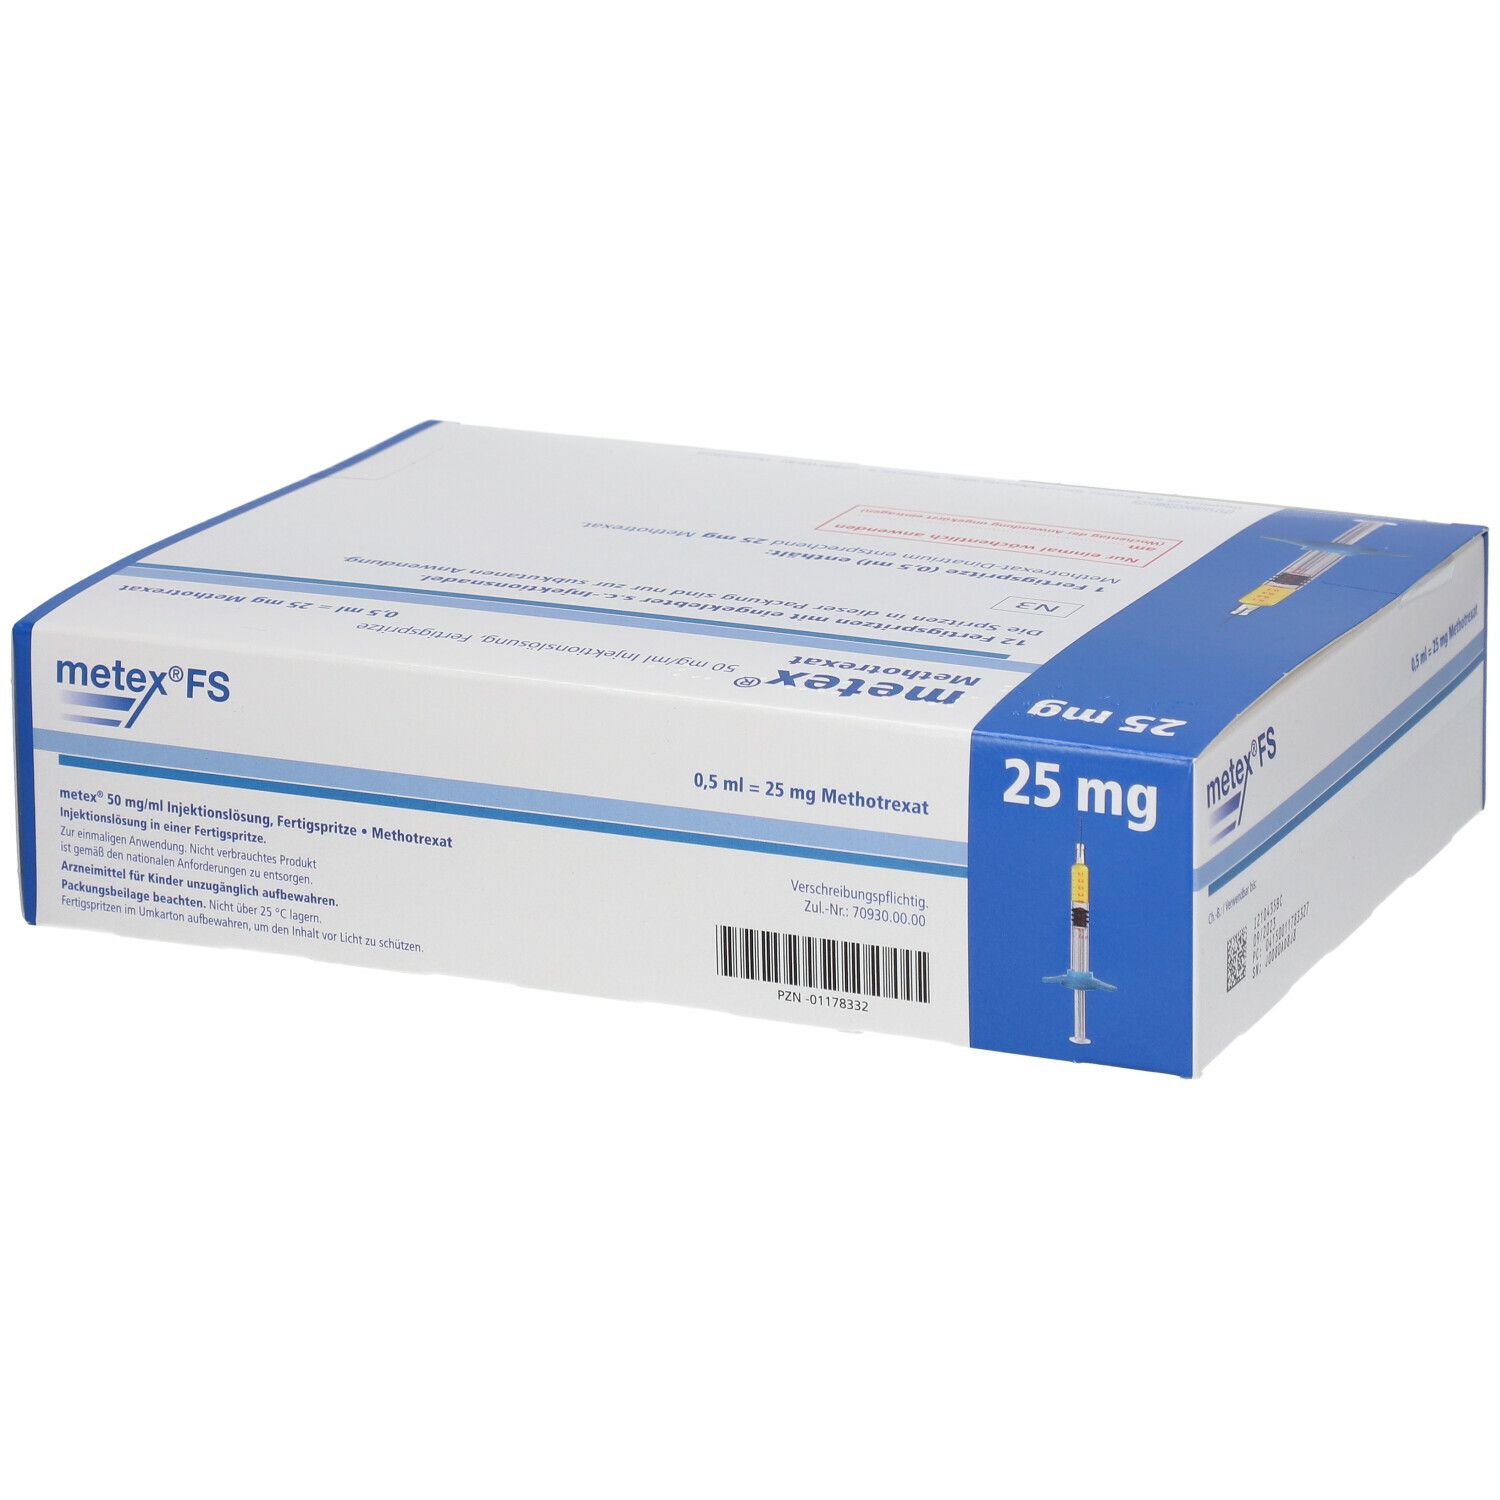 metex® FS 25 mg